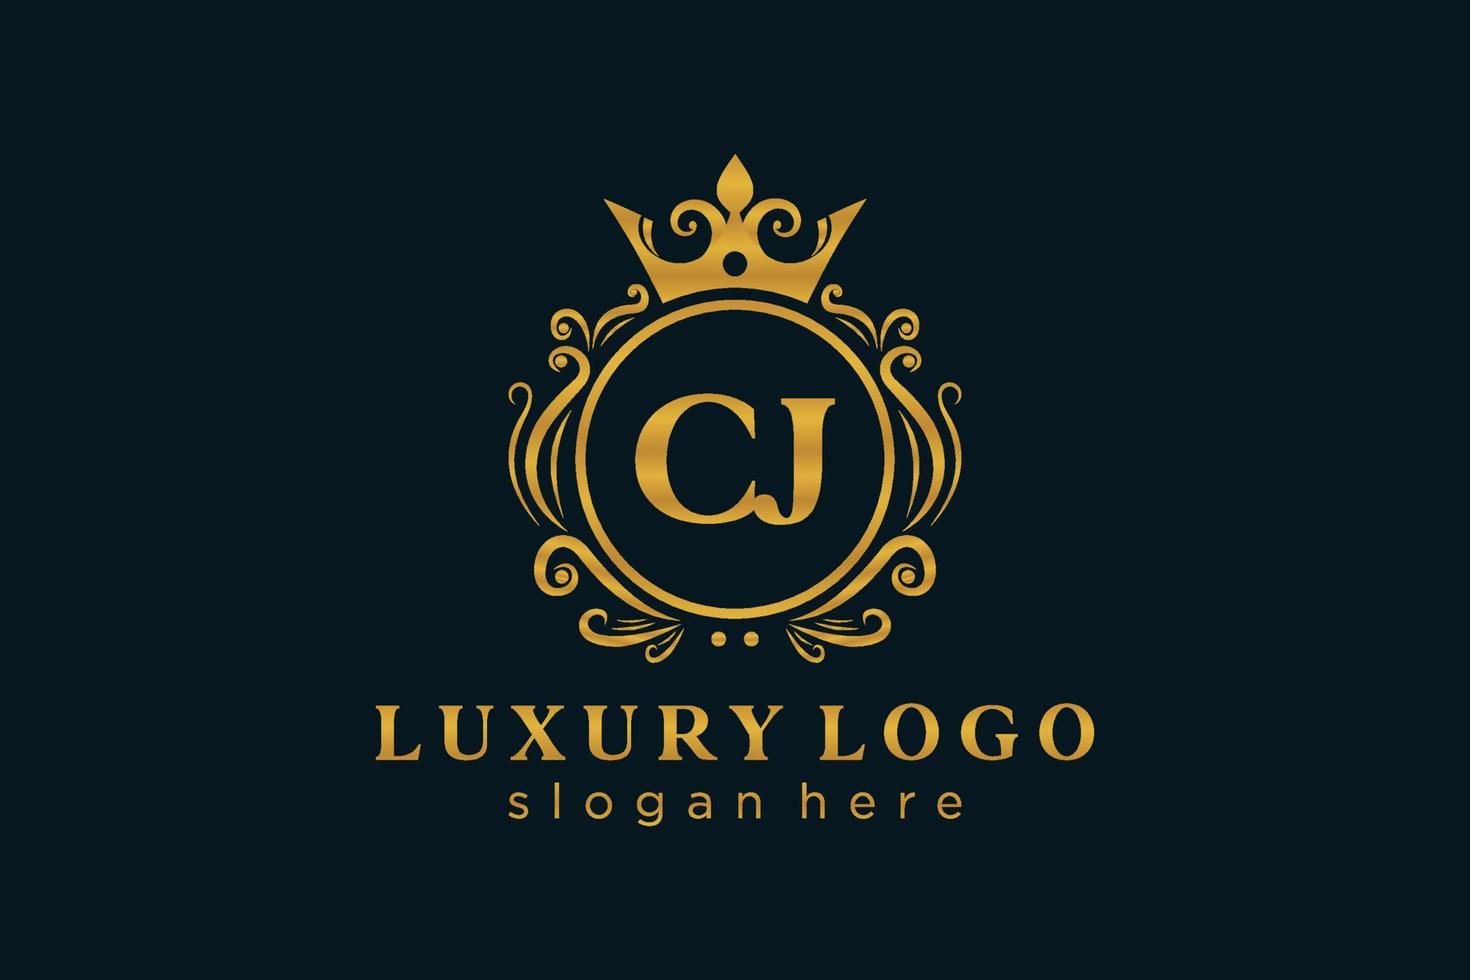 modèle de logo de luxe royal lettre initiale cj en art vectoriel pour restaurant, royauté, boutique, café, hôtel, héraldique, bijoux, mode et autres illustrations vectorielles.